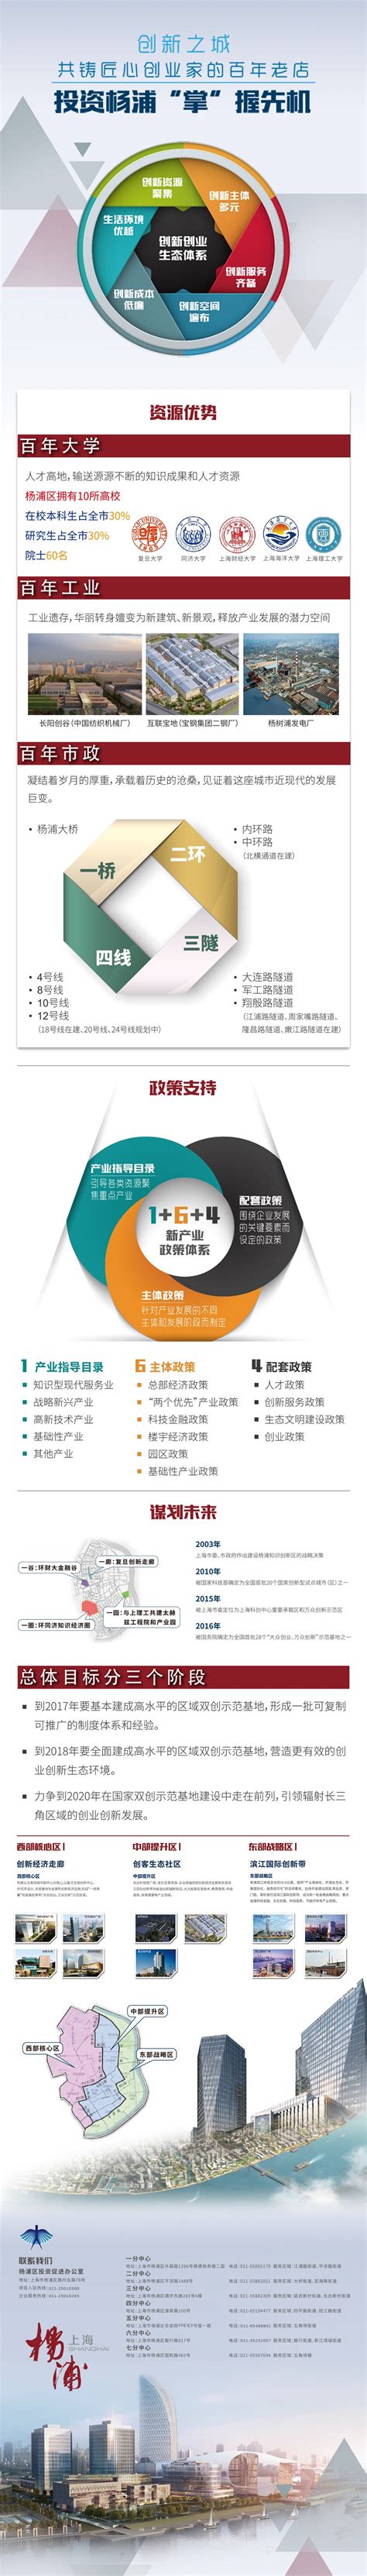 杨浦区租房补贴企业申报系统操作指南 - 上海慢慢看